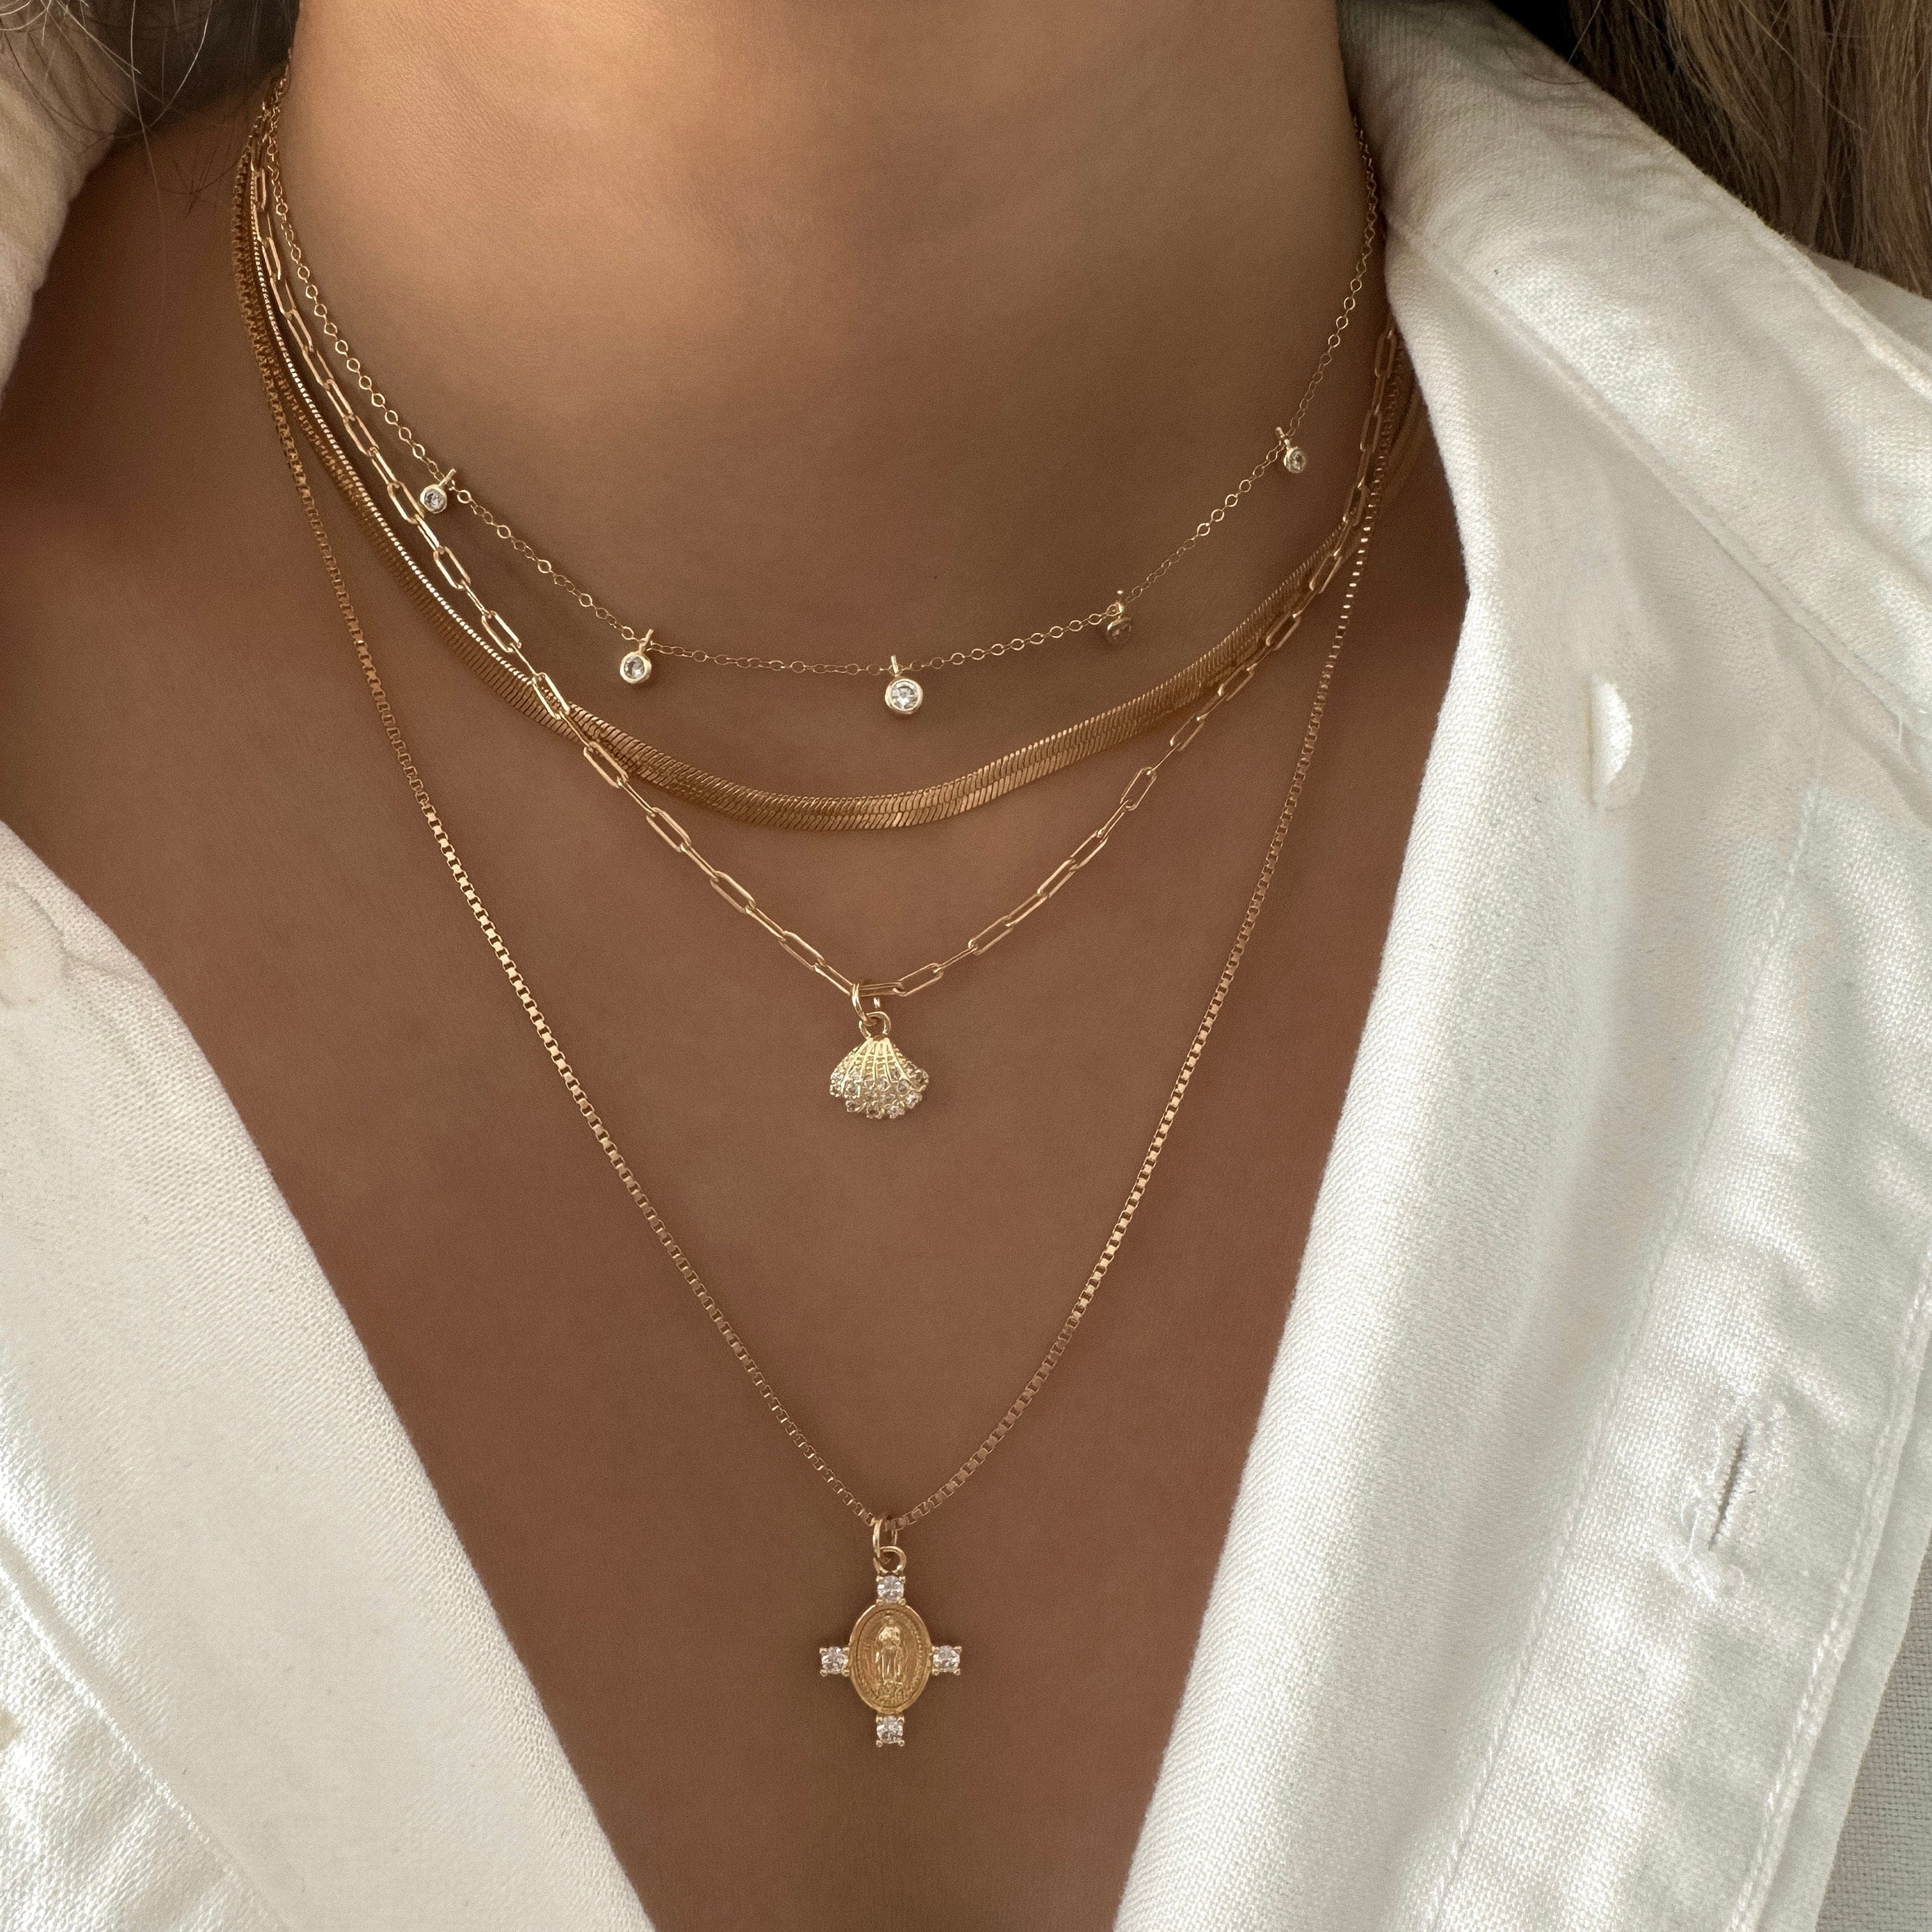 LE sensor necklace Sloane Necklace